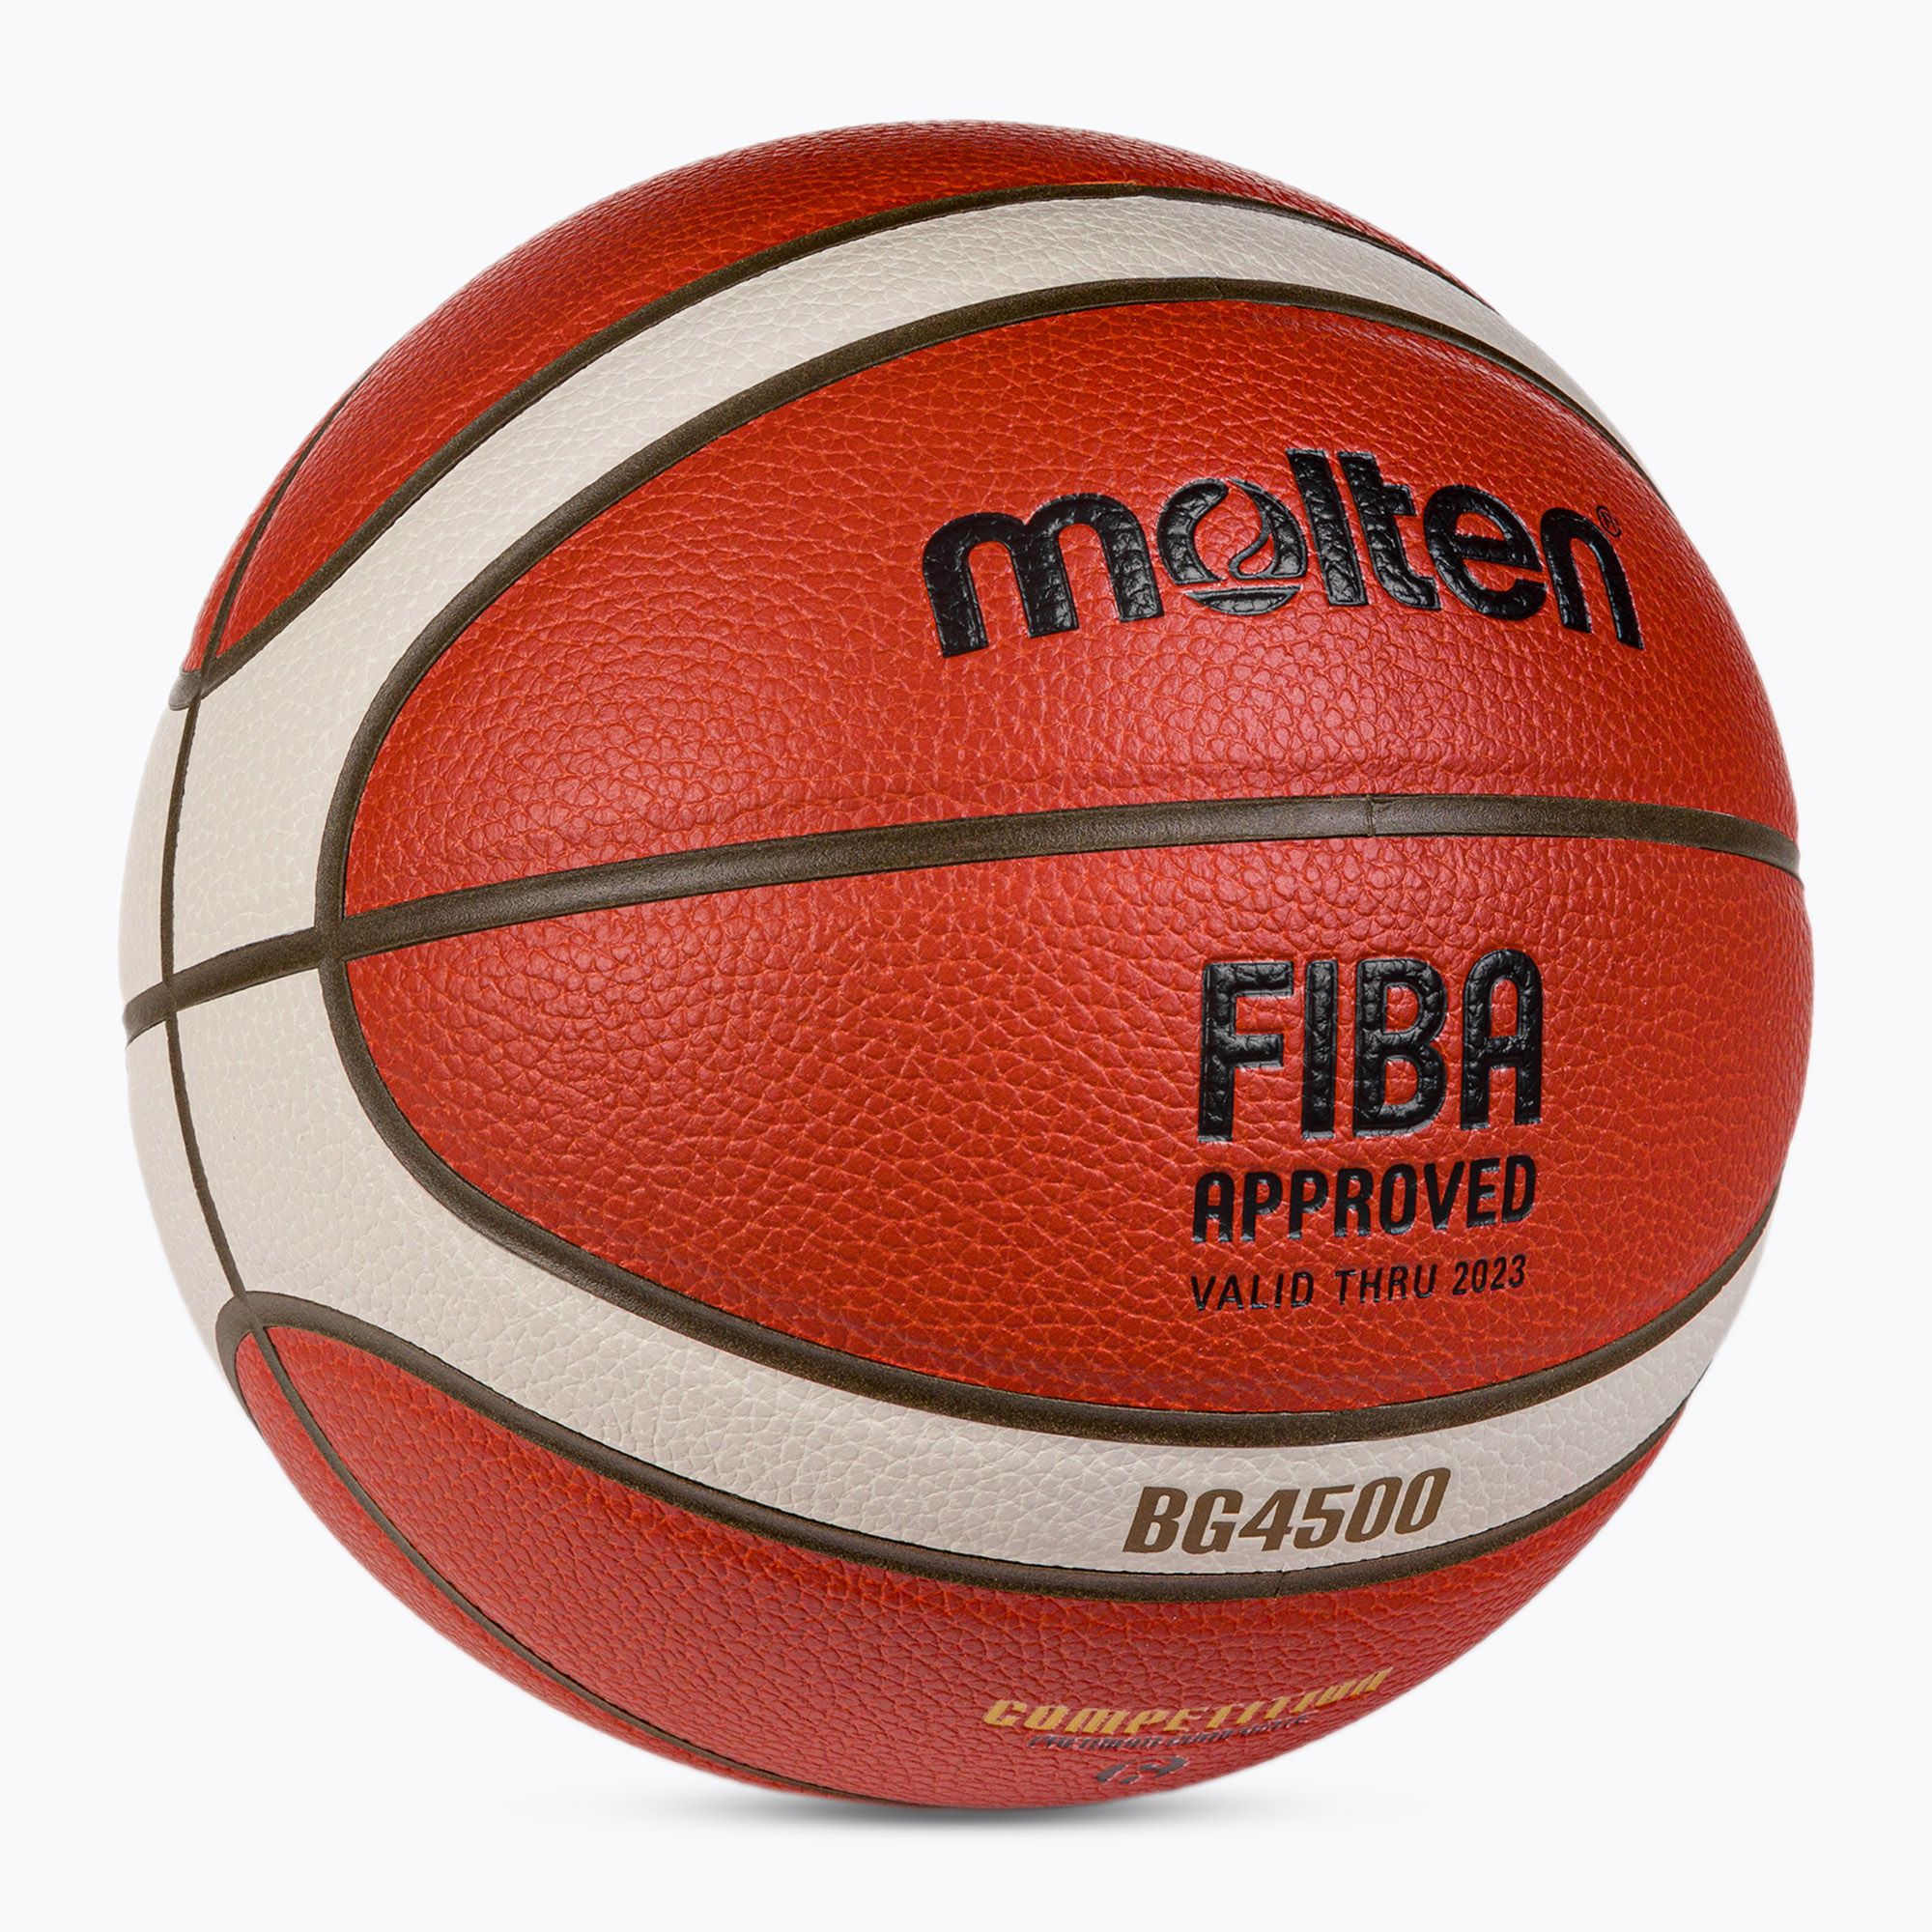 Piłka do koszykówki Molten B6G4500 FIBA pomarańczowa rozmiar 6 zdjęcie nr 2